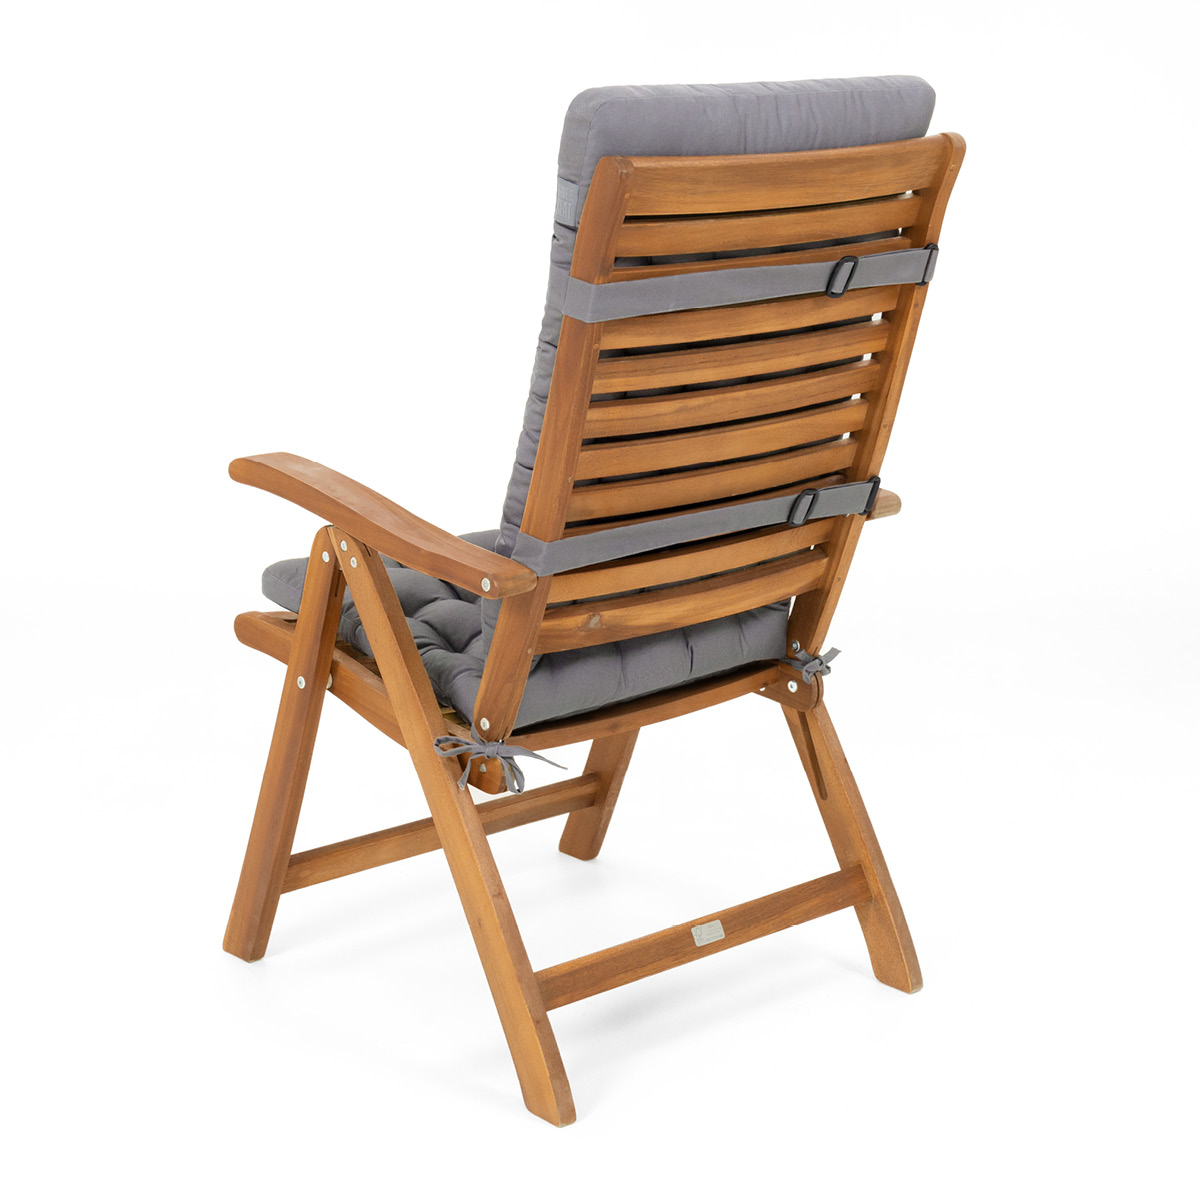 Sitzauflage Hochlehner für moderne Alu-Hochlehner-Gartenstühle | hochwertige Sitzauflagen hellgrau mit Befestigungsbändern | HAVE A SEAT Living